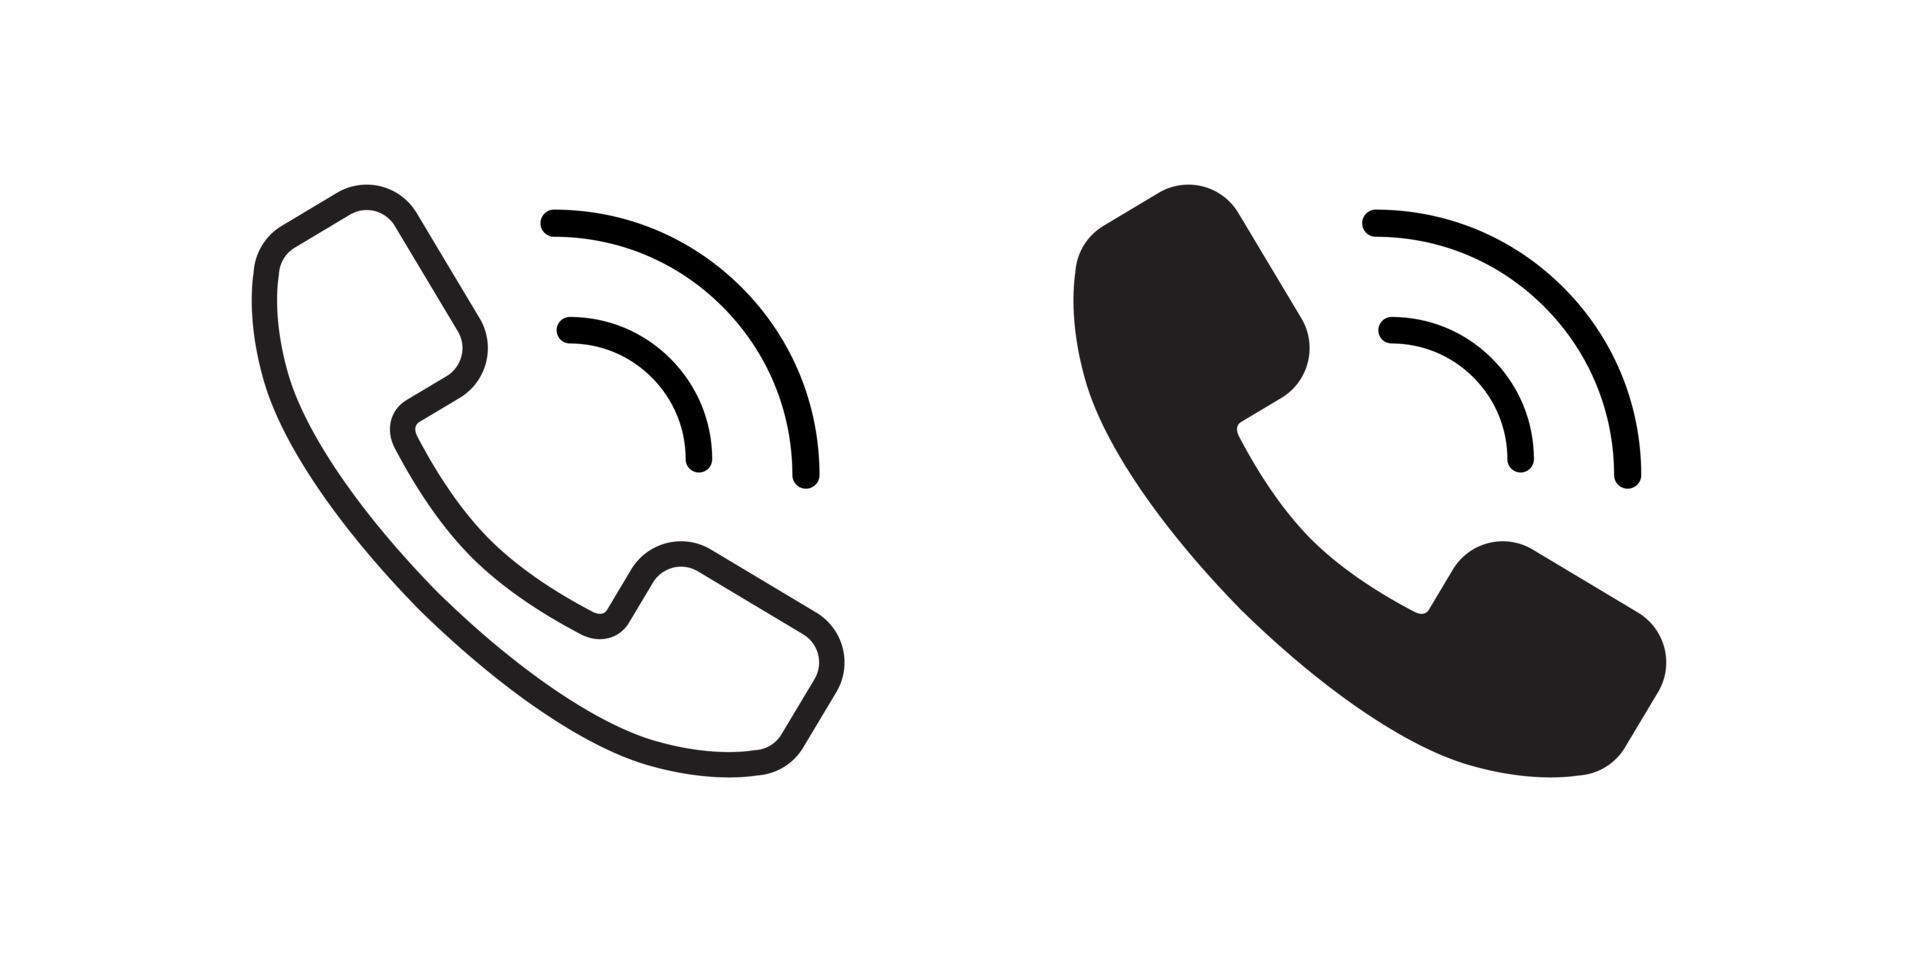 telefon ringa upp, telefon ringande ikon vektor i ClipArt stil